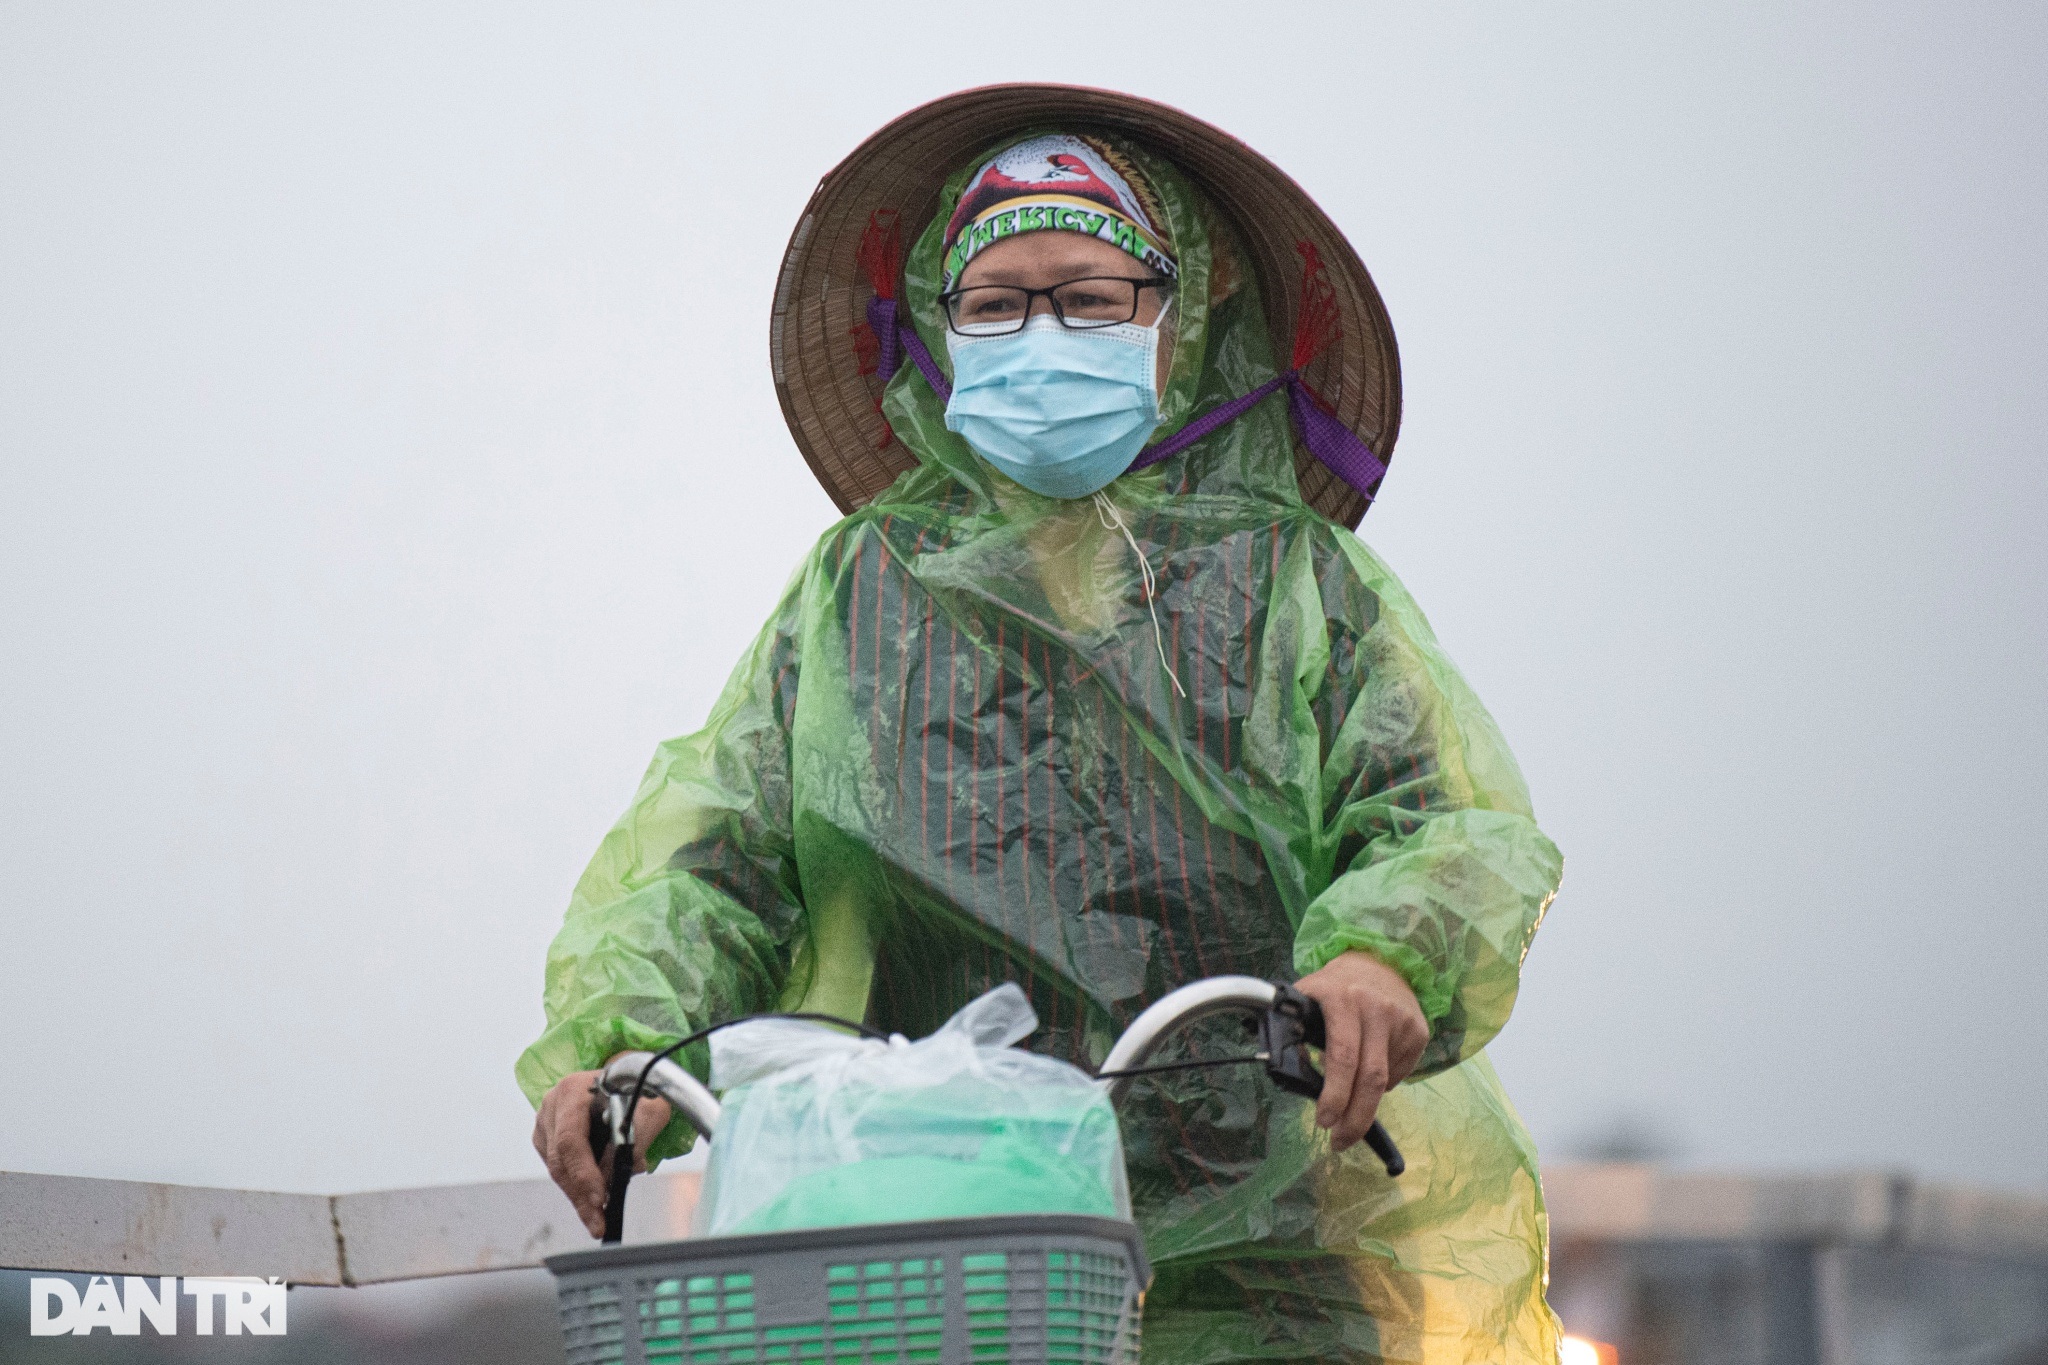 Nhiệt độ giảm sâu, người Hà Nội co ro đi làm trong mưa lạnh - 2